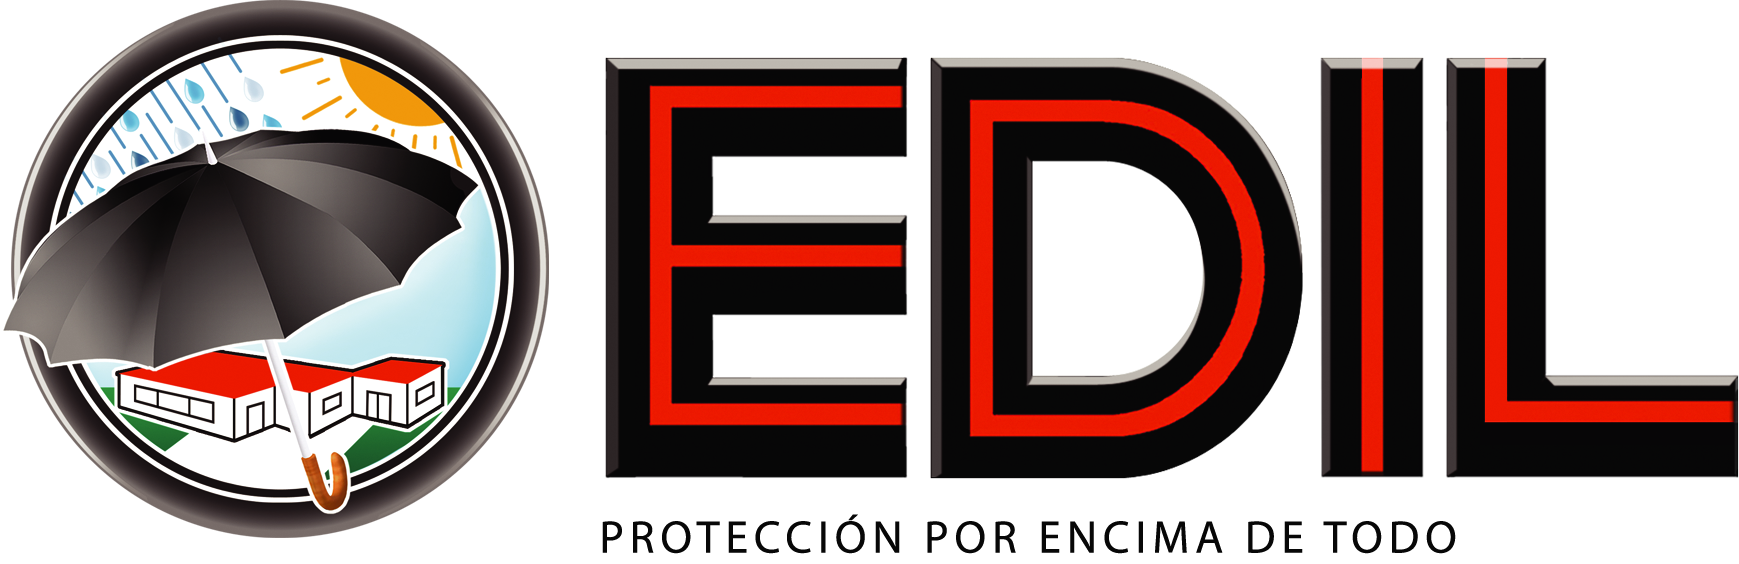 Logo-Edil